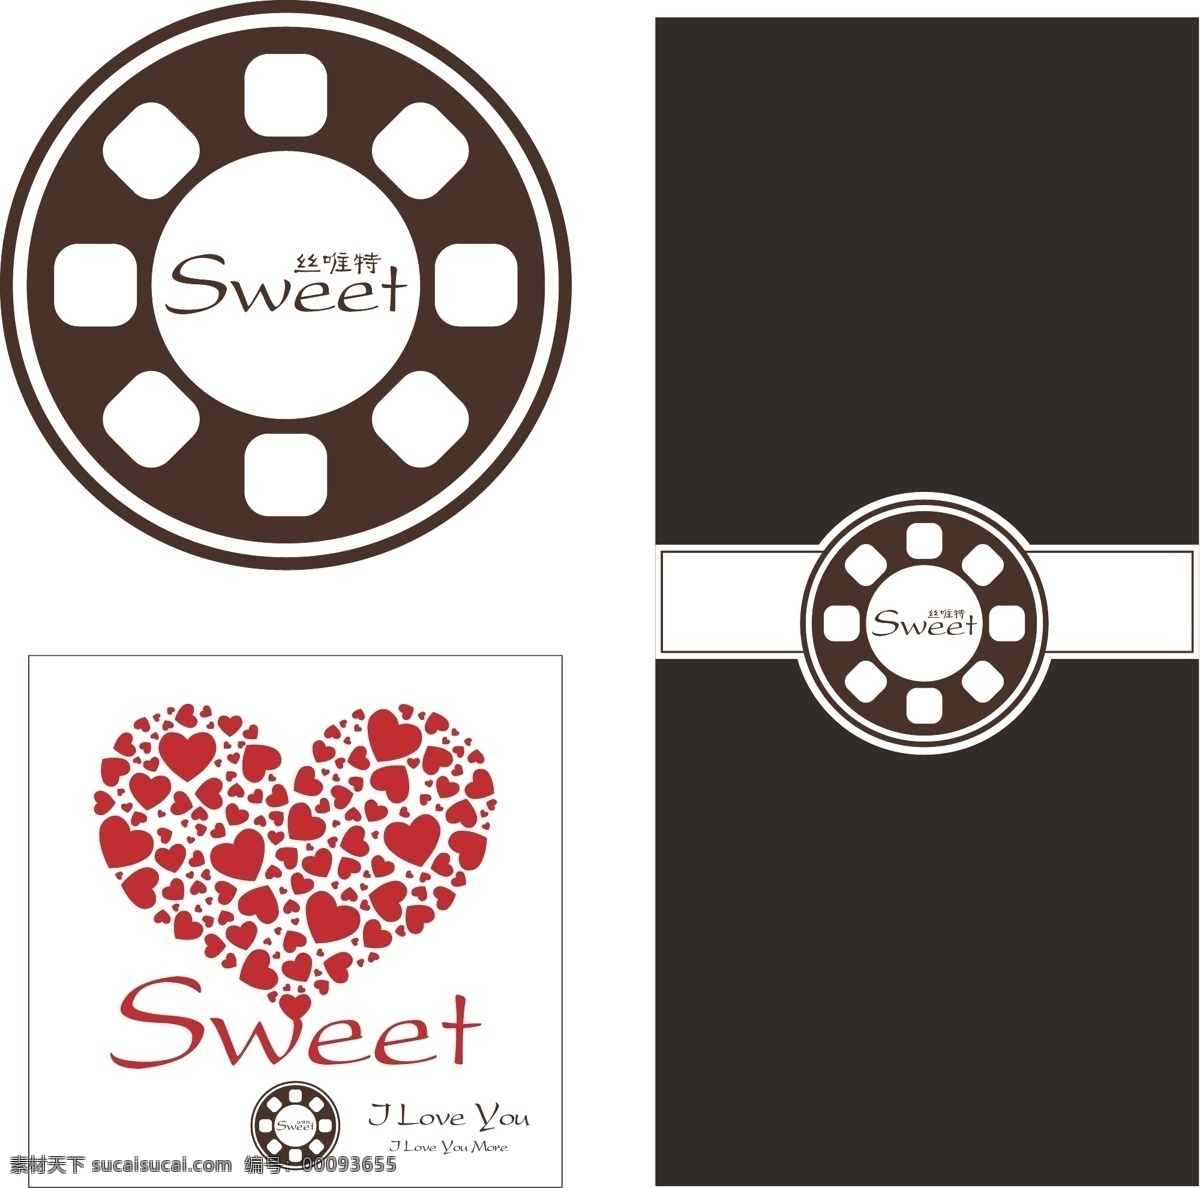 巧克力 logo logo设计 sweet 爱 爱情 爱心 包装 标识 标志 商标 菜单 心型 心 红 浪漫 唯美 糖 可爱 清新 美好 美丽 矢量图